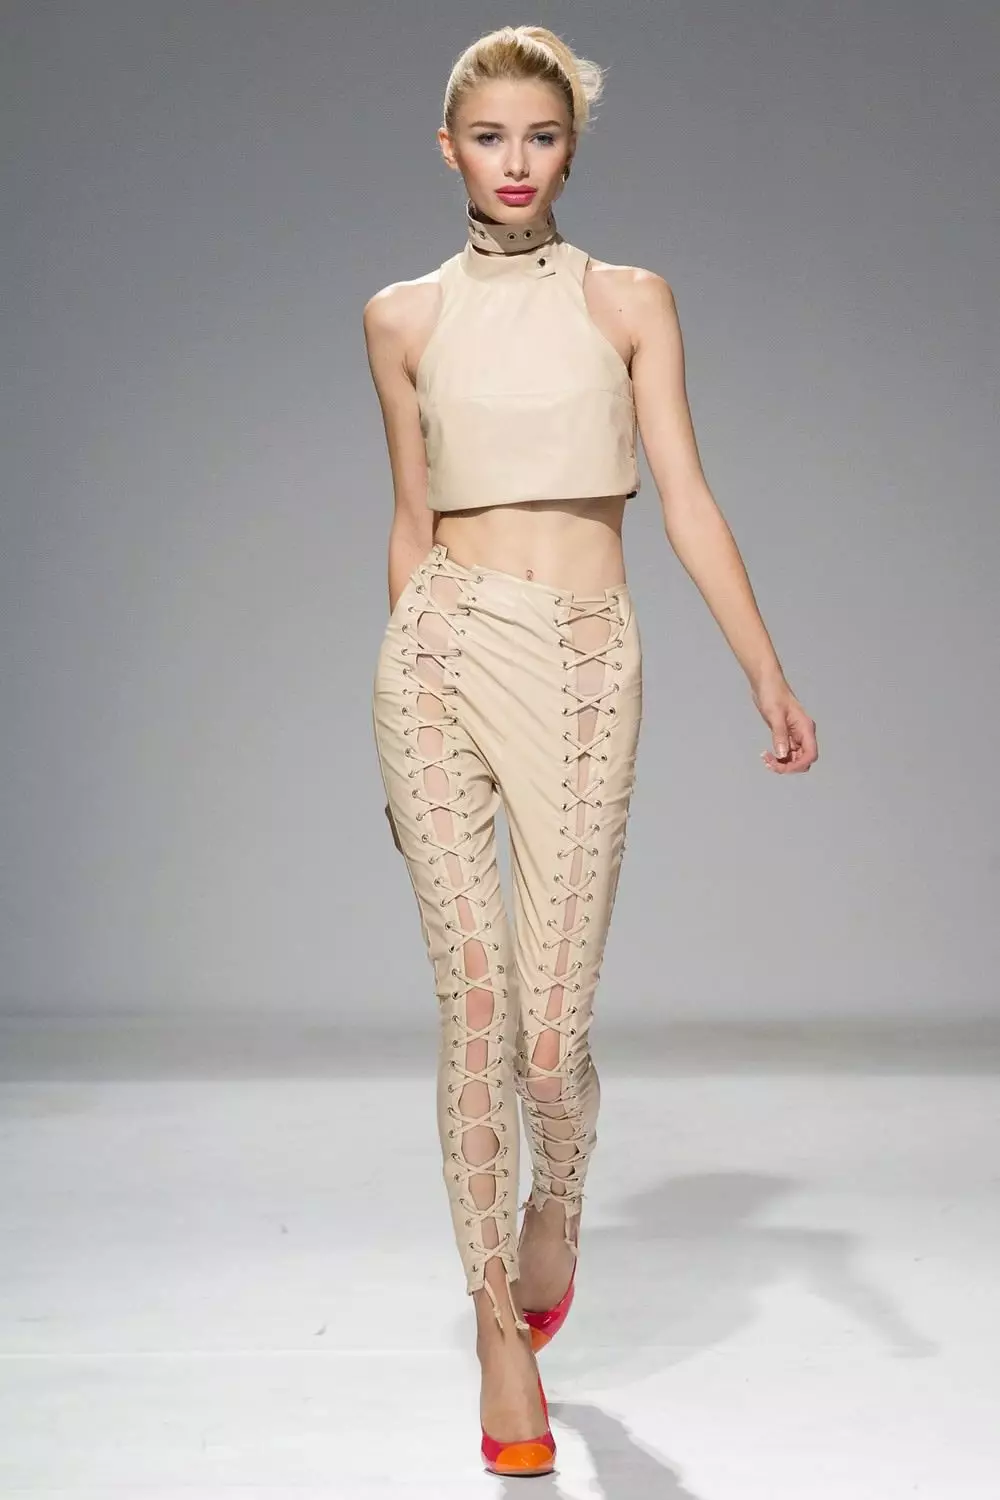 Fashion Bukser 2021: Kvinders stilfulde modeller, Fashion Trends 917_411